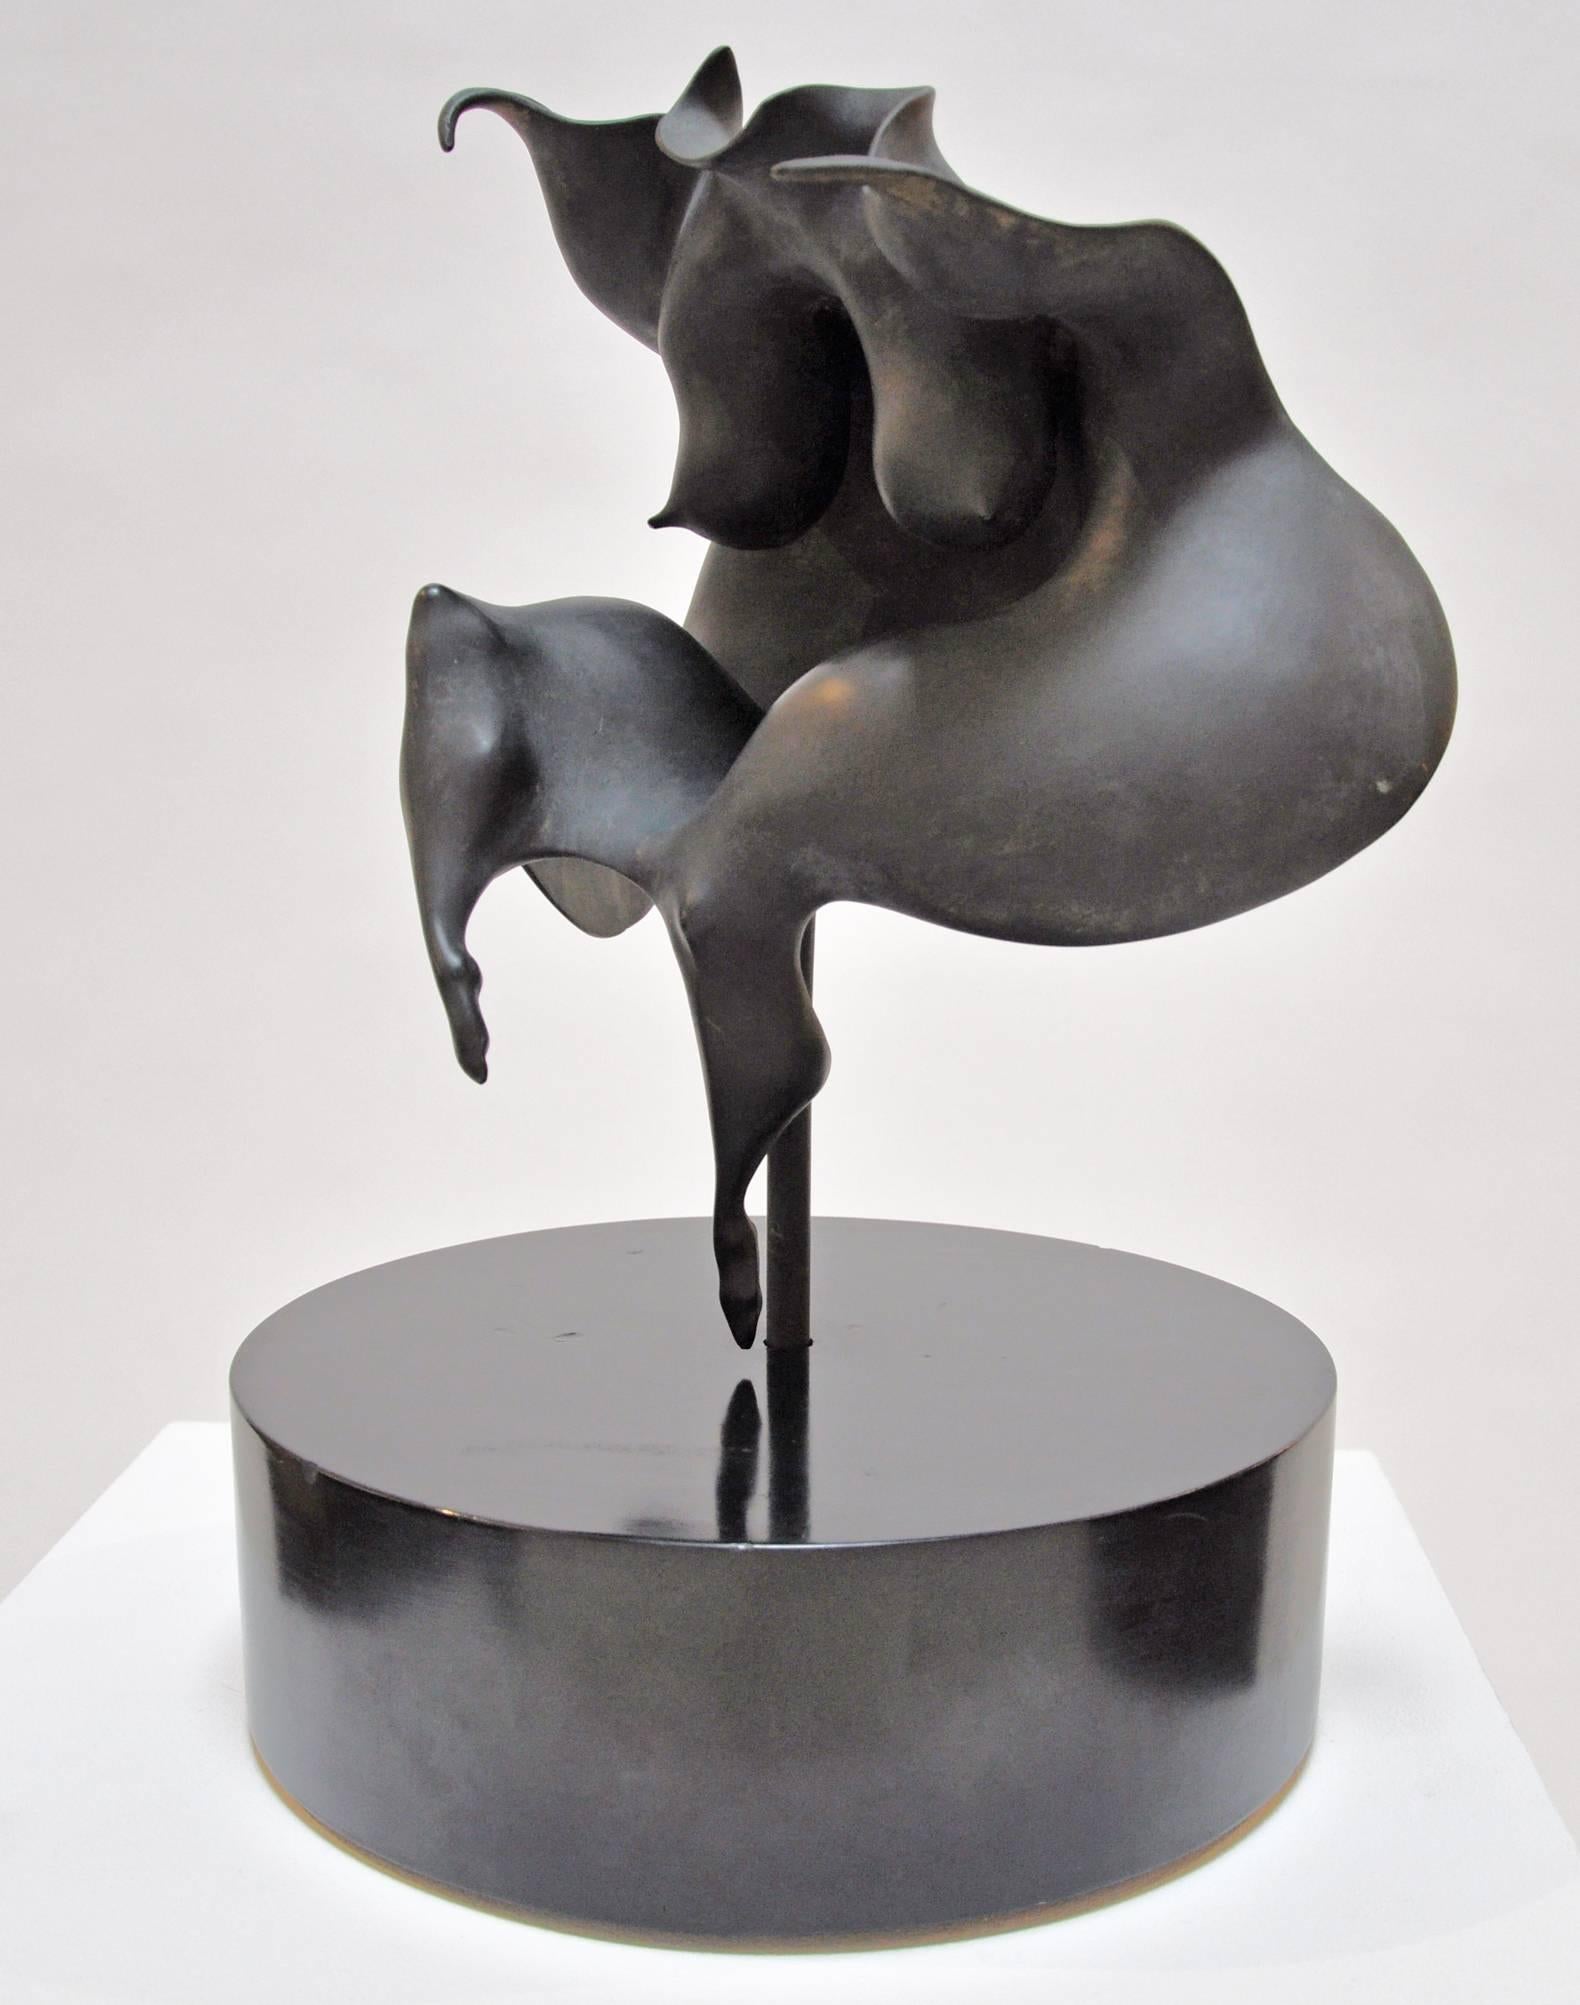 Fine art bronze sculpture on wood base by Richard Boyce (1920-1976). Paper label on base reads: Richard Boyce, 